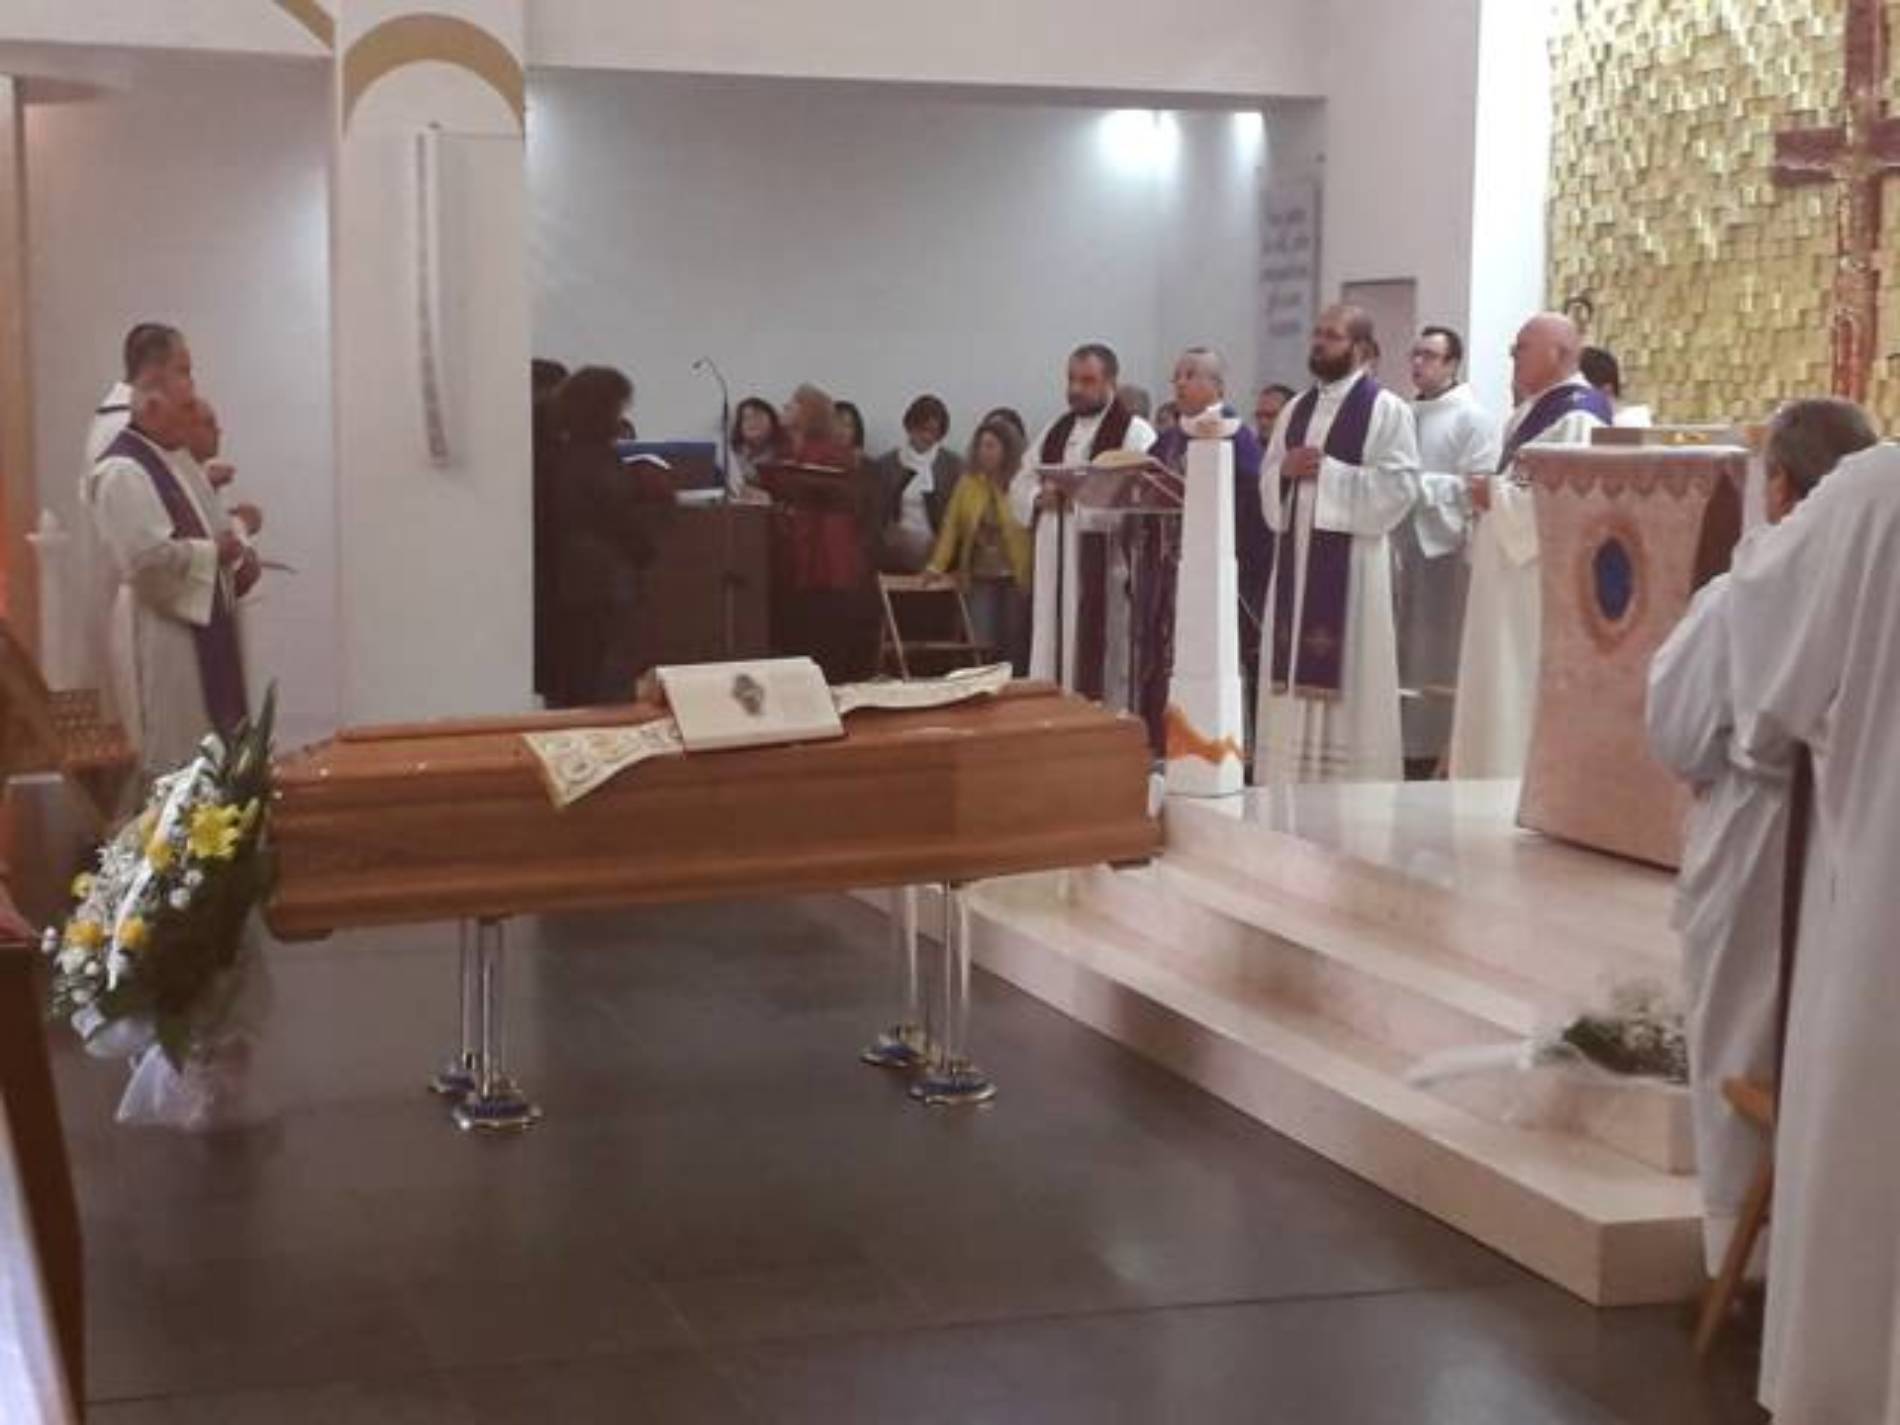 BARRAFRANCA. Funerali di don Giovanni Pinnisi. Chiesa “Sacra Famiglia” stracolma di gente